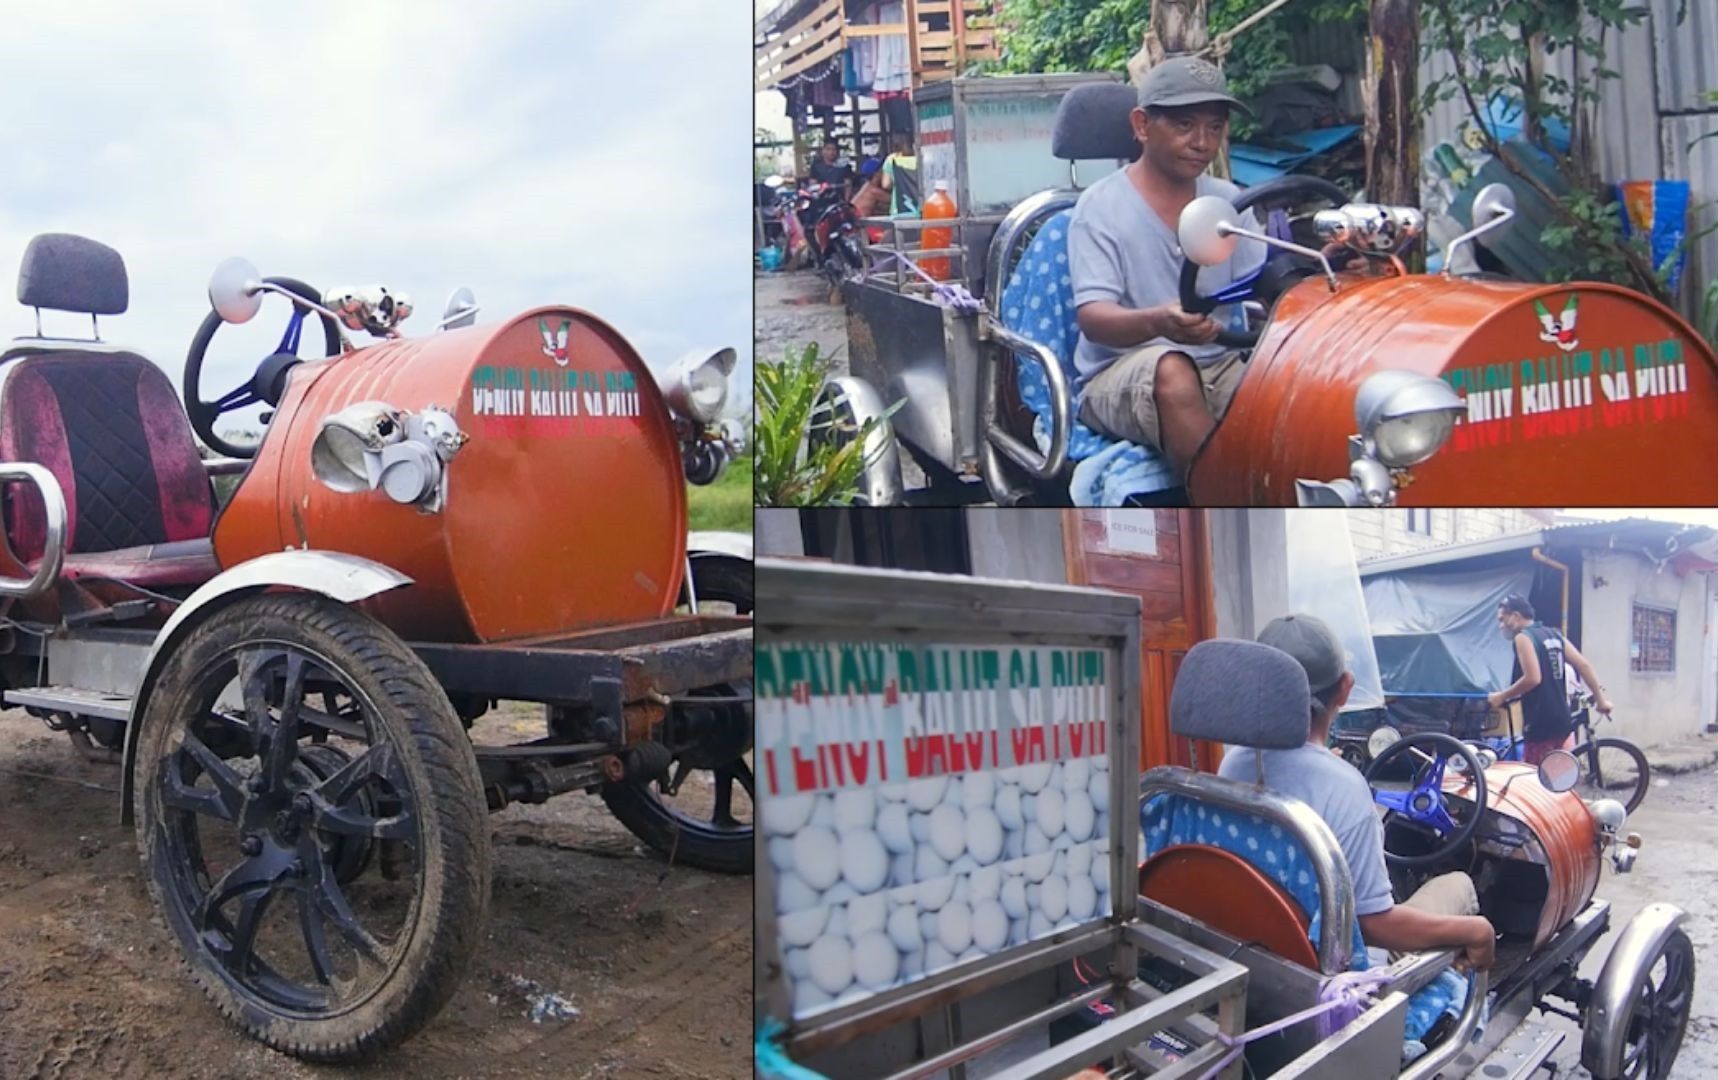 Vendor Balut meningkatkan pendapatan dengan menjual ‘mobil drum’ yang terbuat dari bahan daur ulang